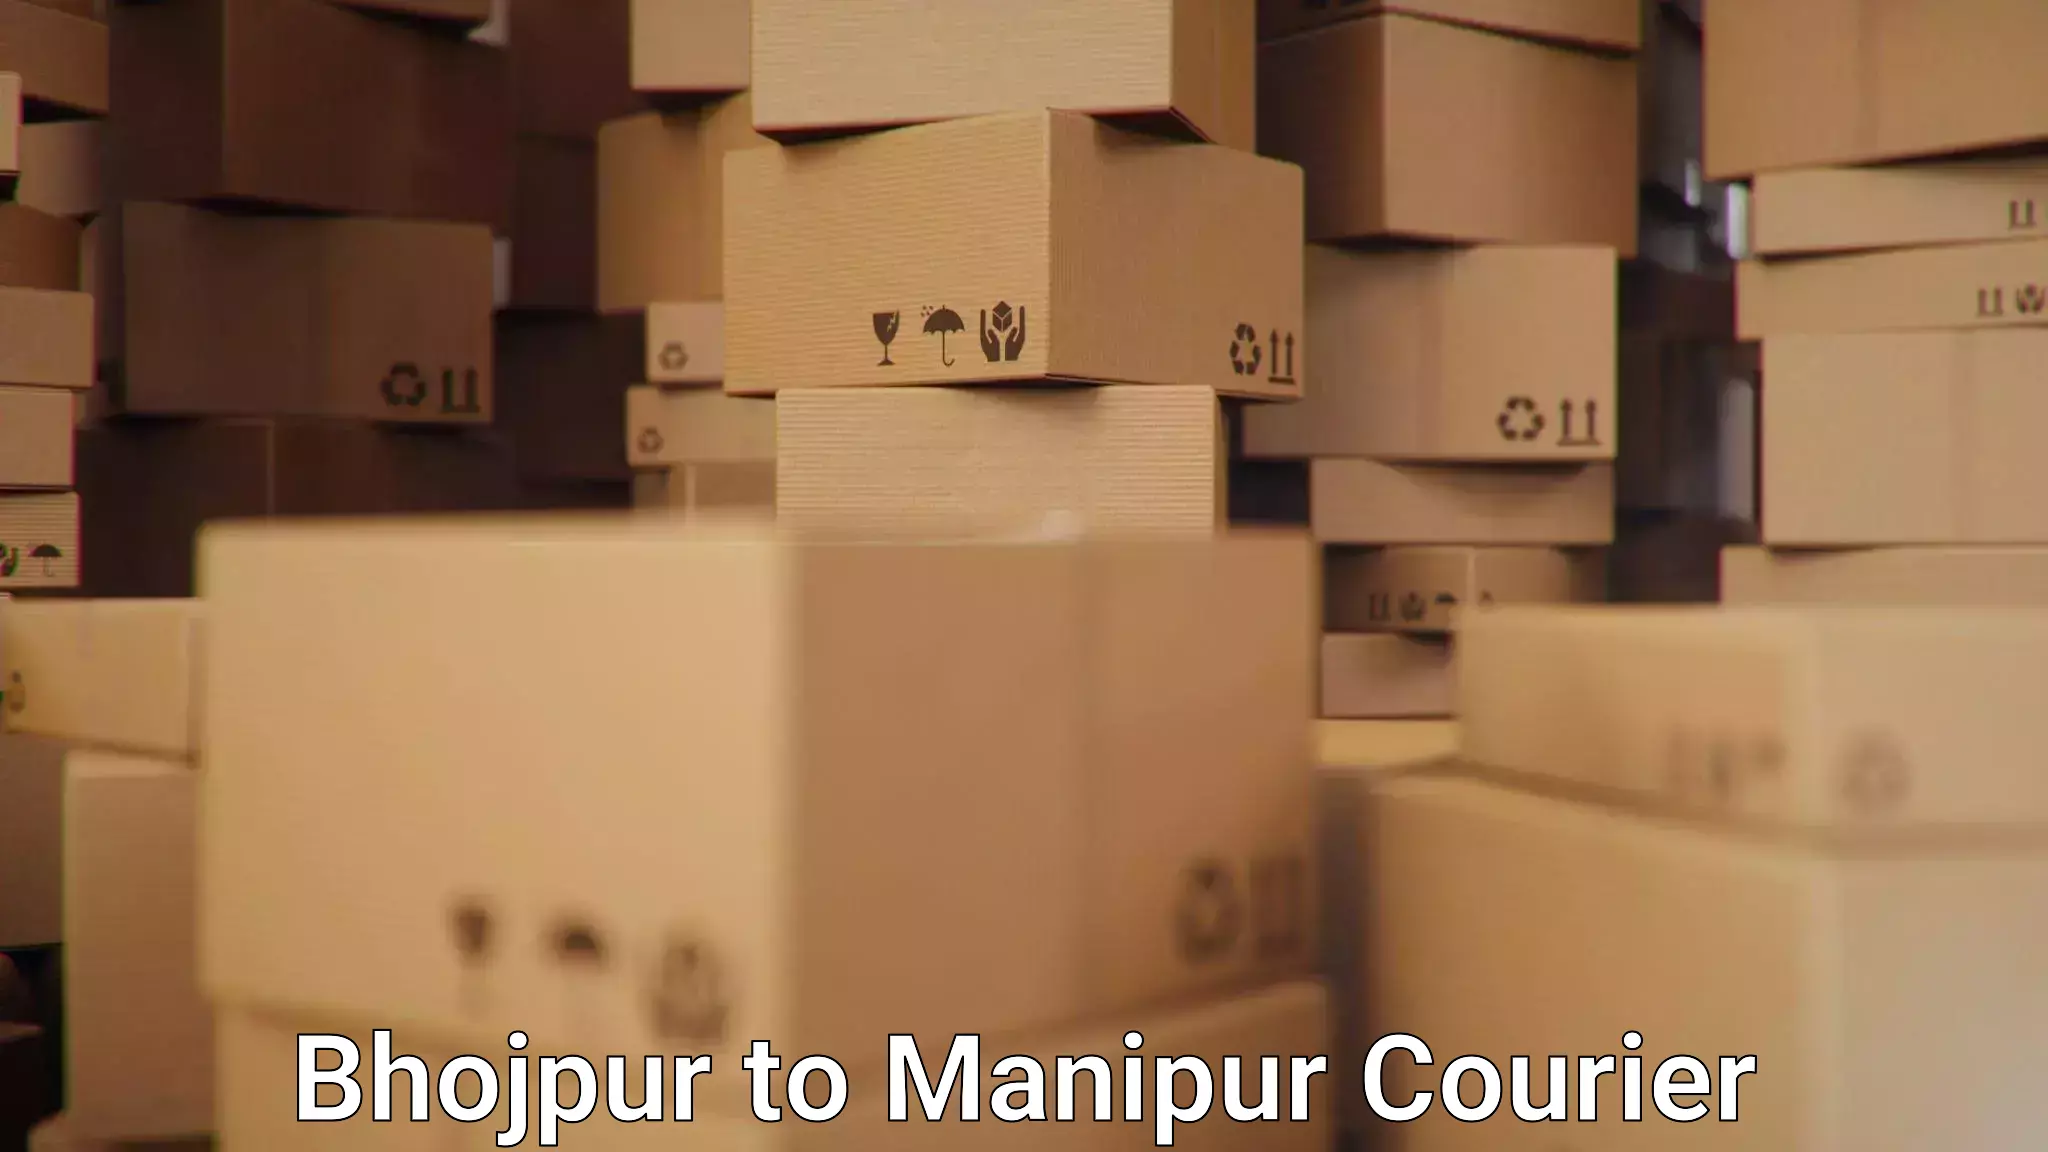 Bulk courier orders Bhojpur to Churachandpur